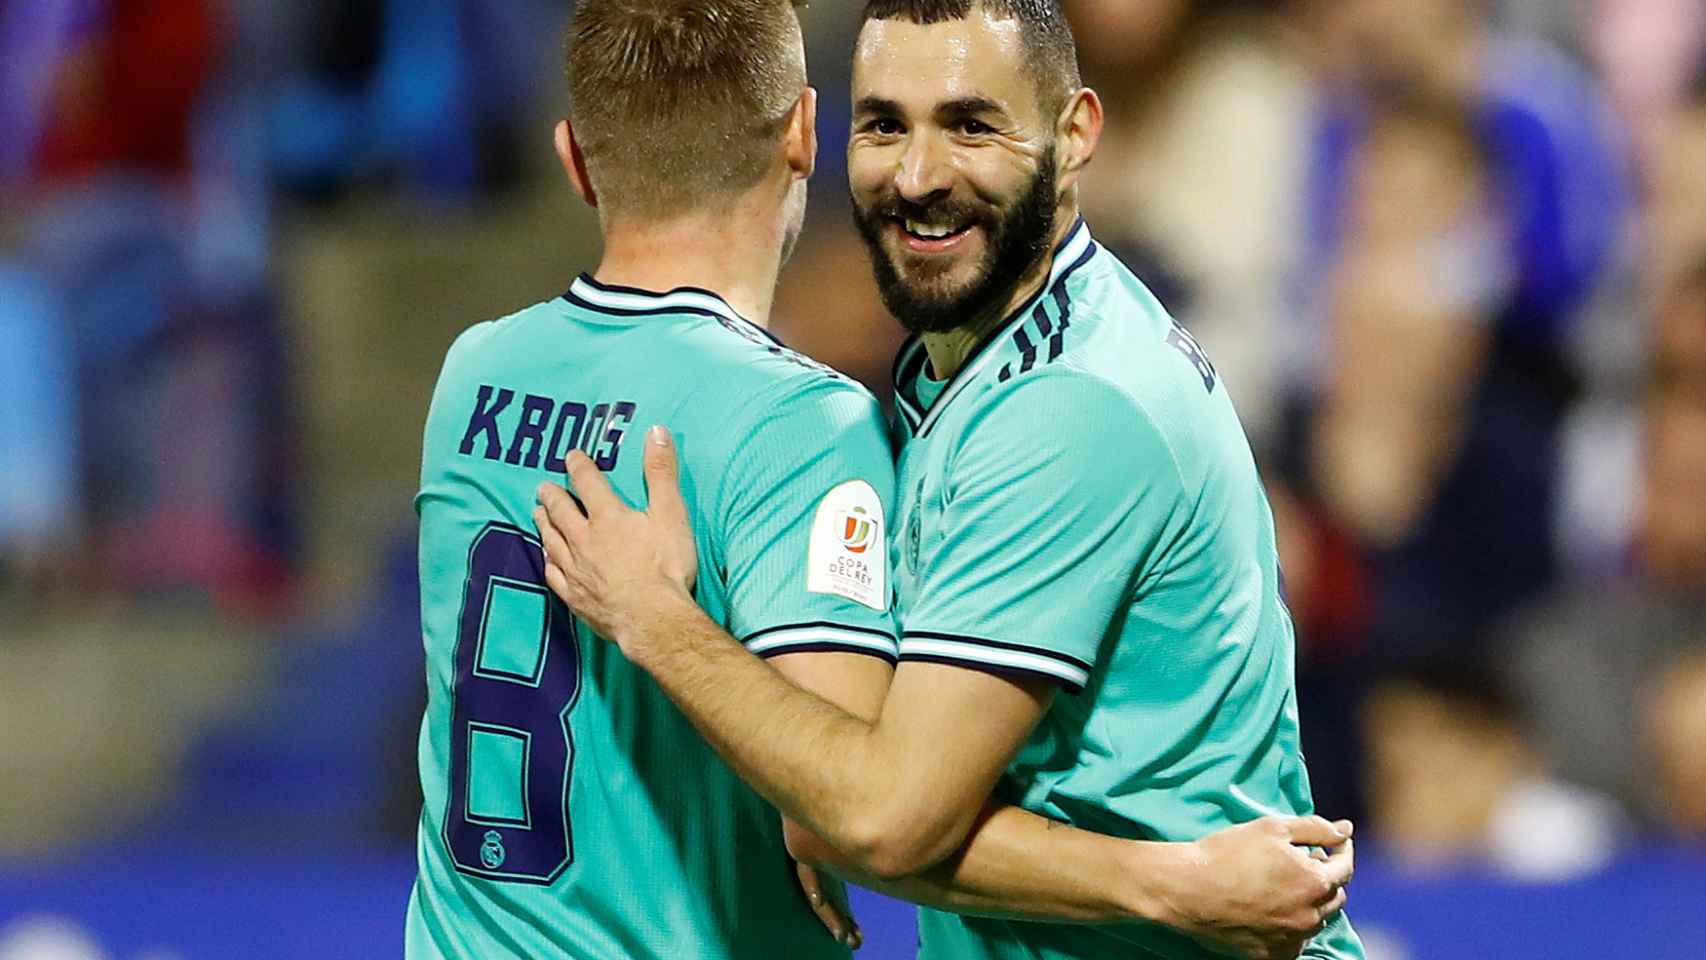 Toni Kroos felicita a Karim Benzema tras su gol al Real Zaragoza